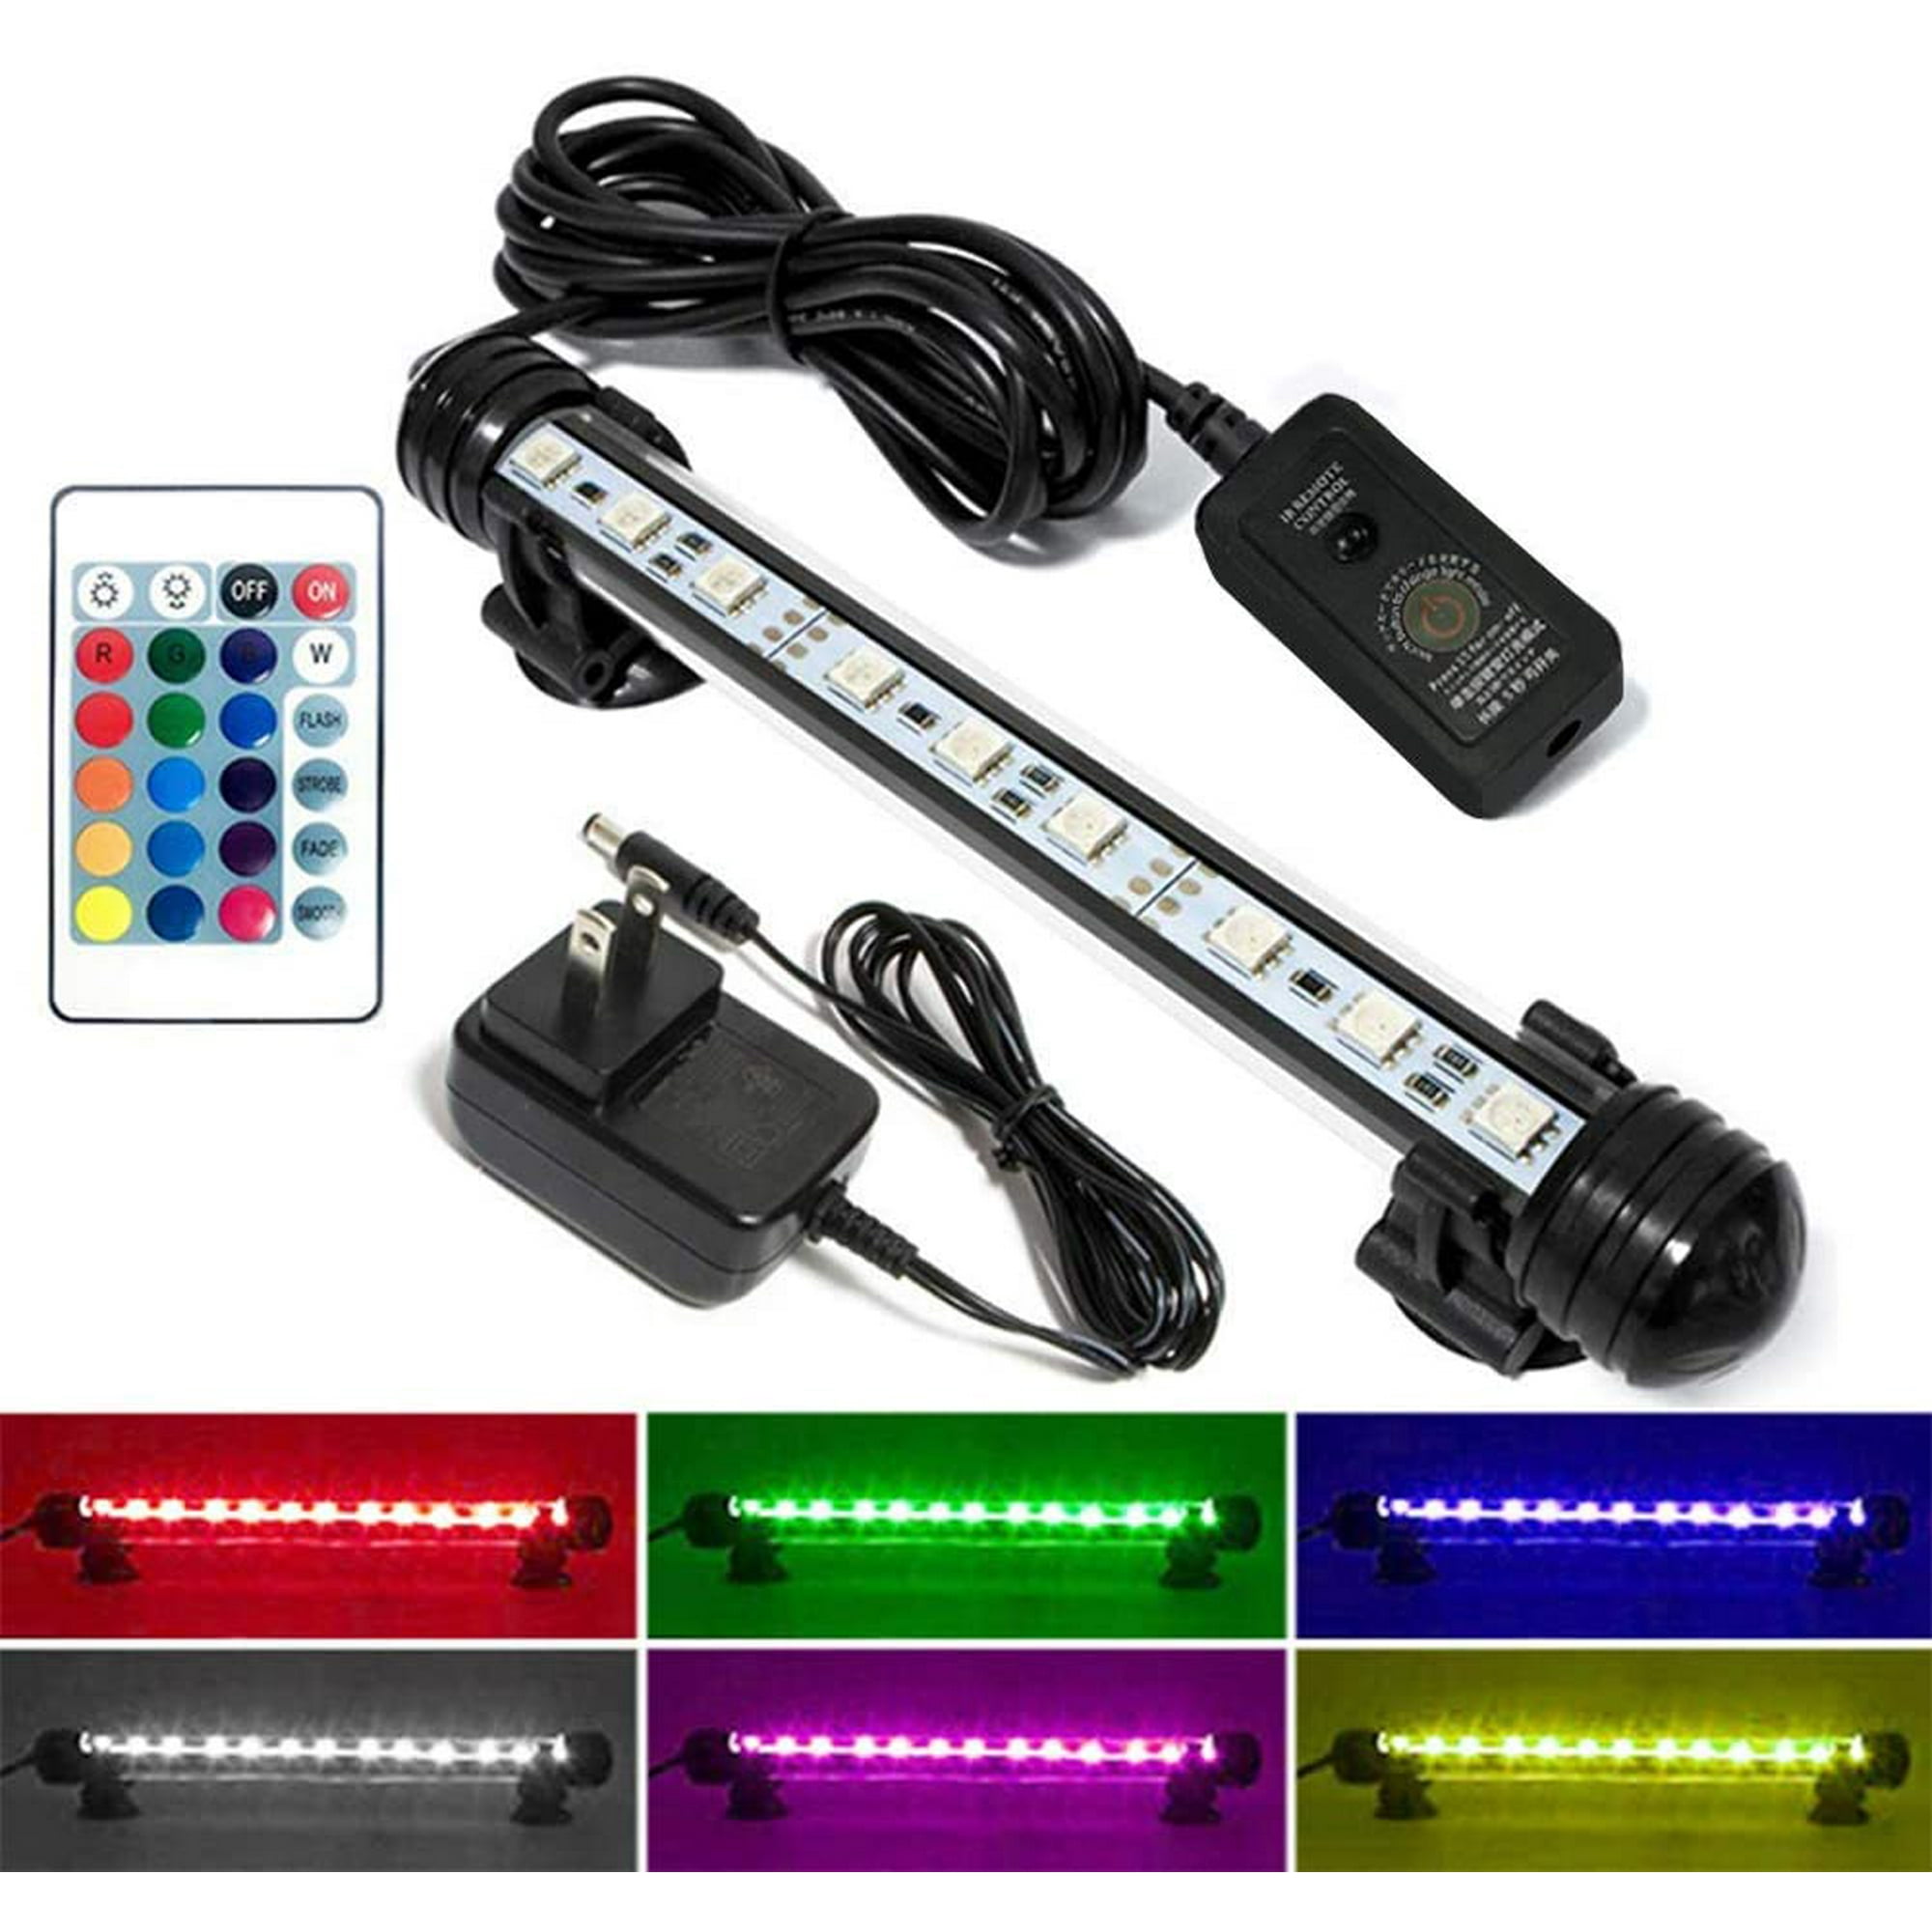 Luz de acuario LED, luz de pecera con control remoto inalámbrico, cambio de  color RGB, brillo ajustable, luz LED sumergible bajo el agua Ofspeizc  WMZL-571-4